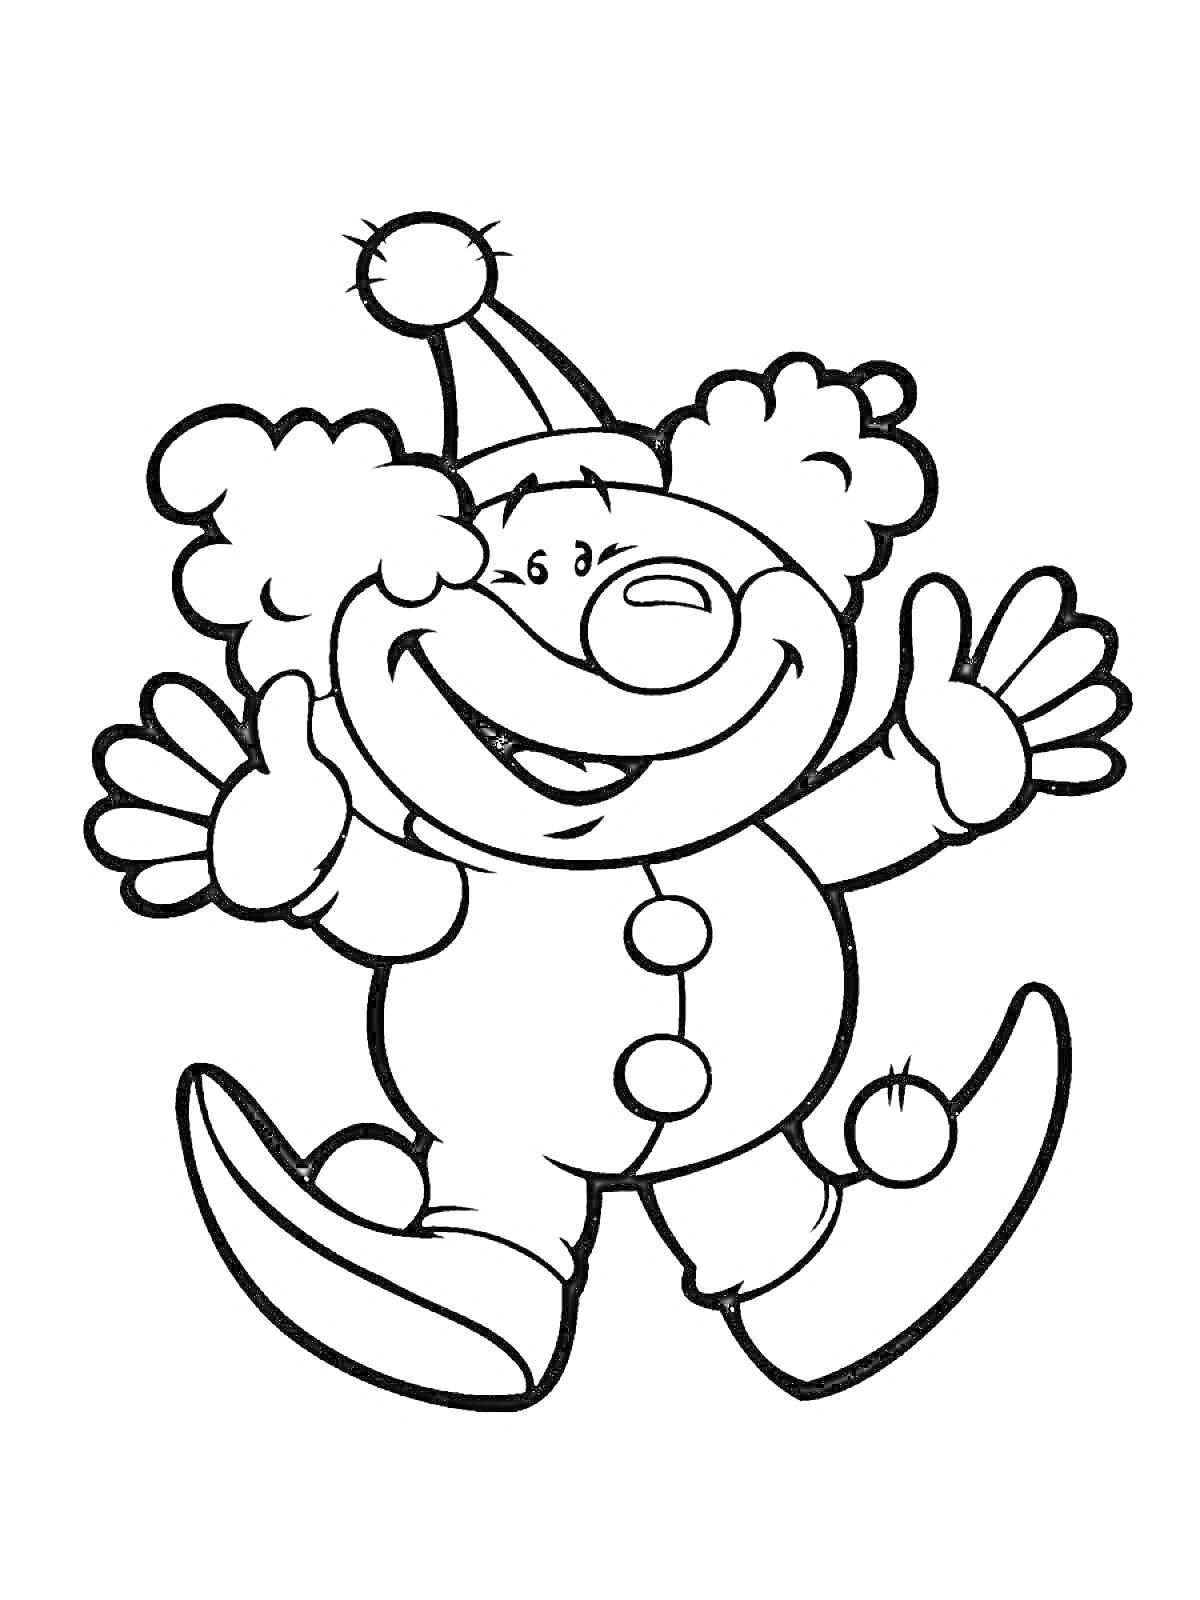 Раскраска Клоун с крупным носом в колпаке, одетый в костюм с пуговицами и с помпоном на пятке, машет руками.